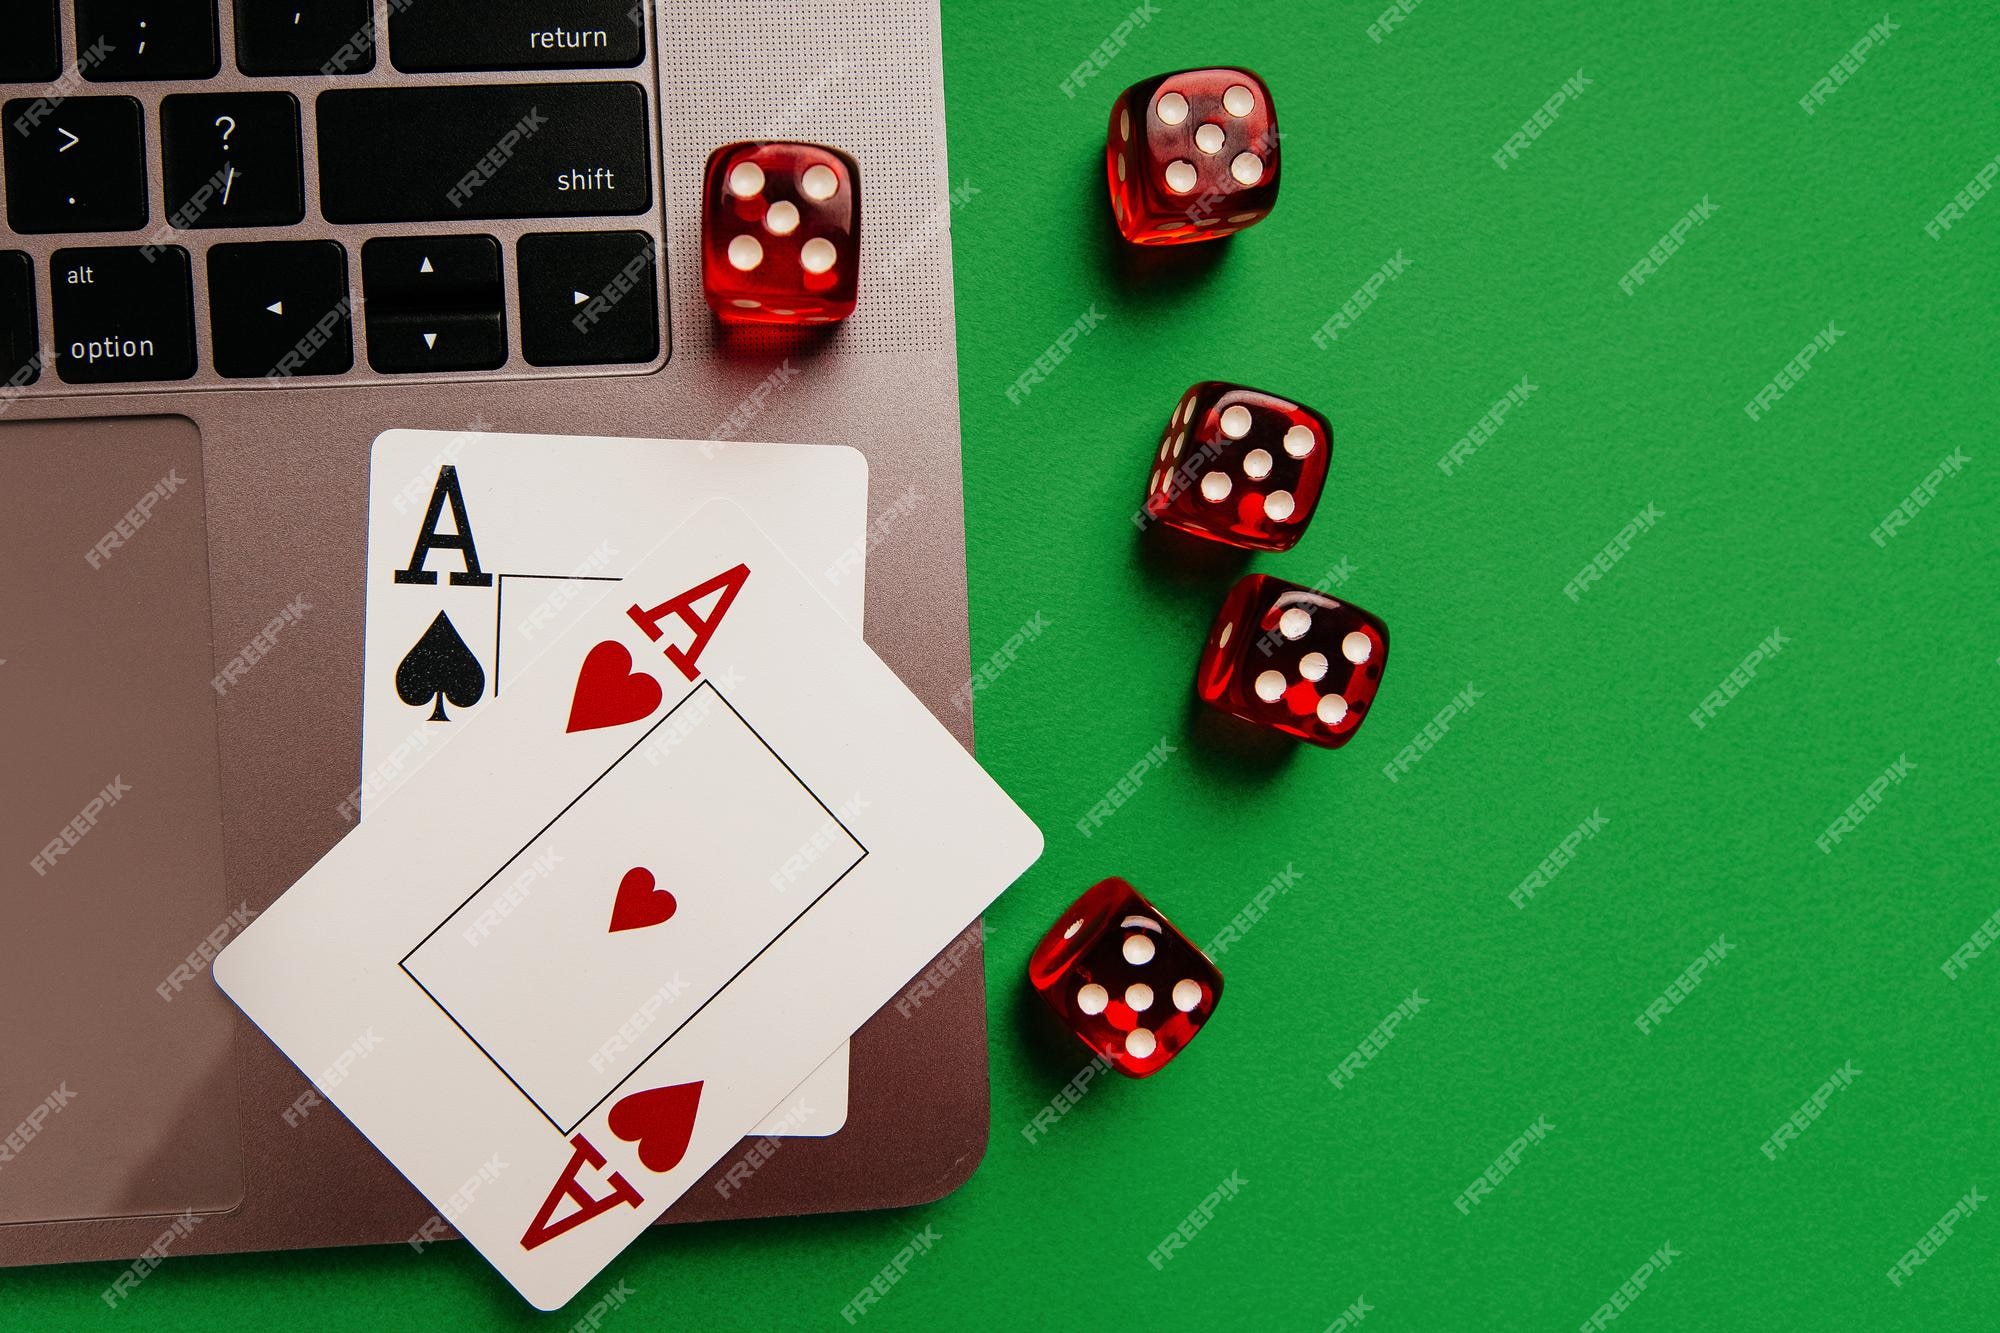 Plataforma de jogos online, casino e negócios de jogos de azar. cartas e  dados no teclado do laptop, em tons de azul.